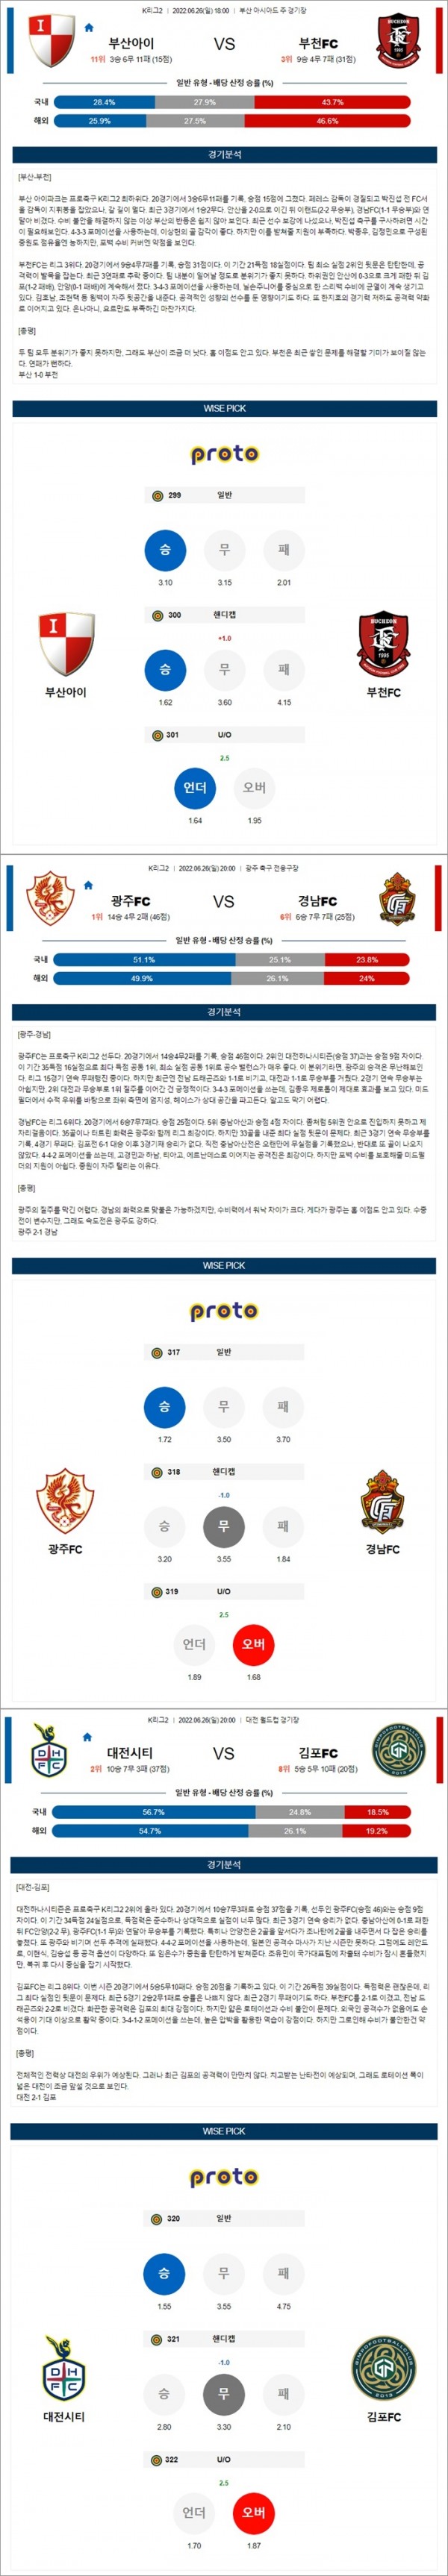 6월26일 K리그 2부리그 3경기 통합 분석.jpg